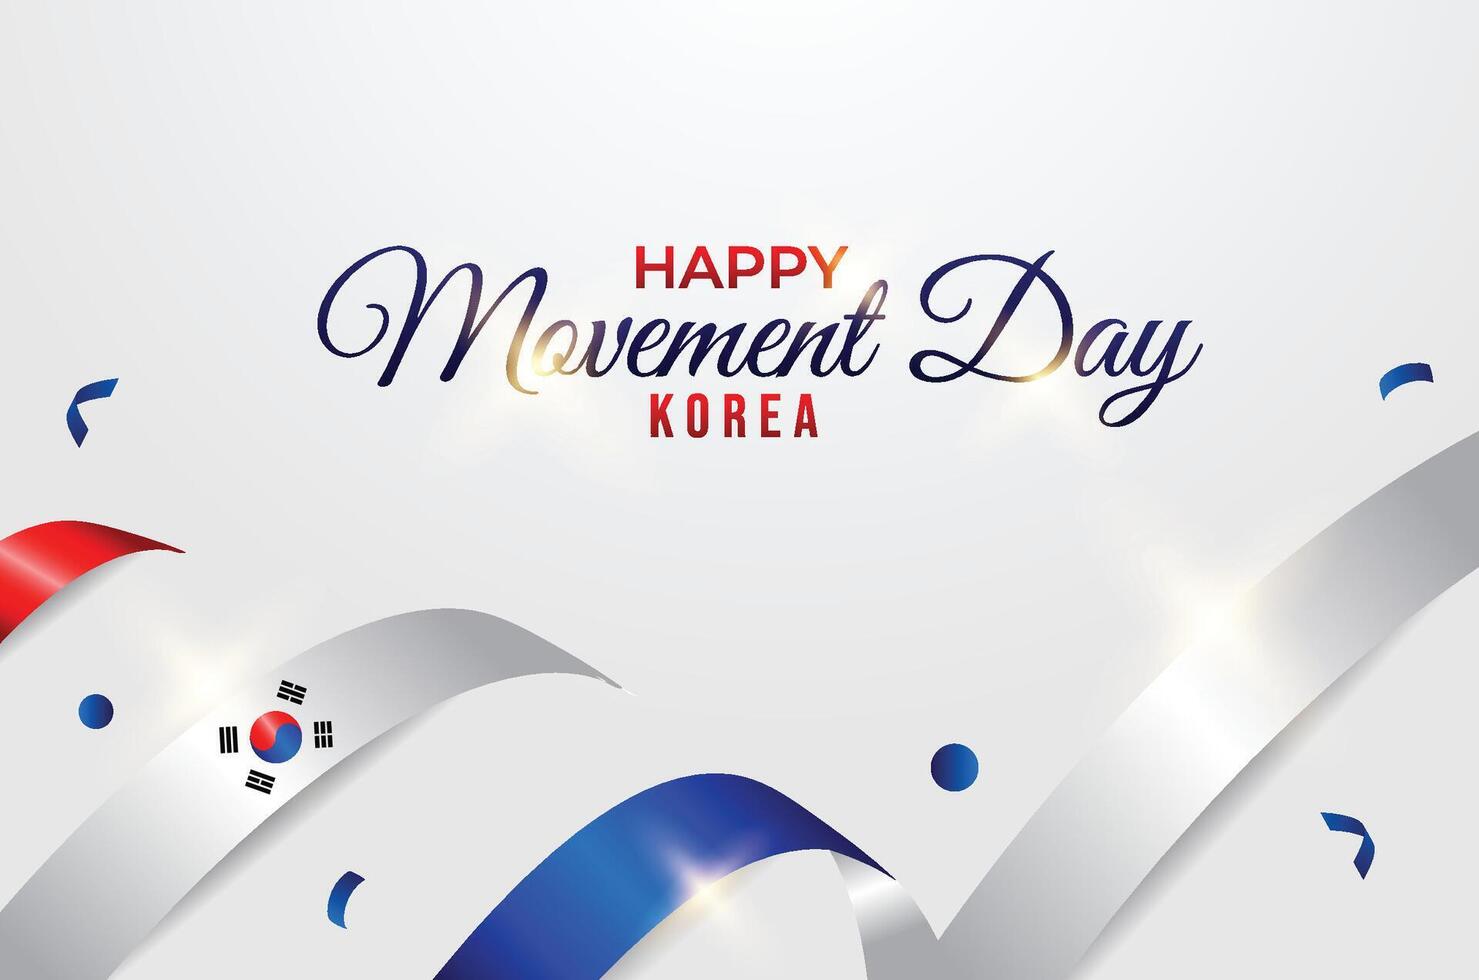 Korea Movement day vector design template